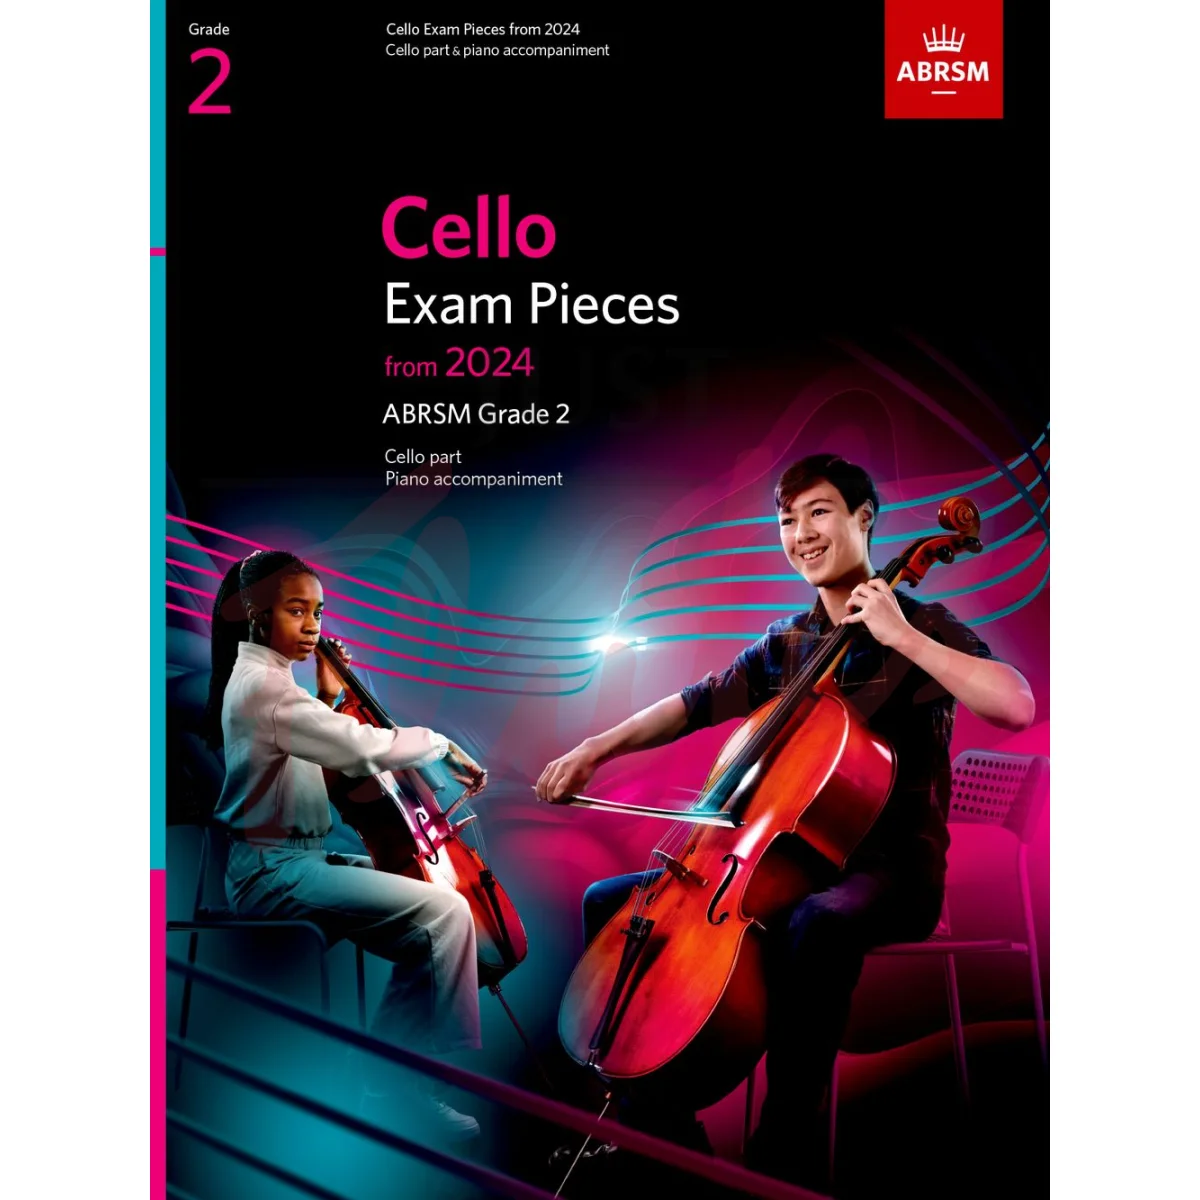 Cello Exam Pieces from 2024, Grade 2